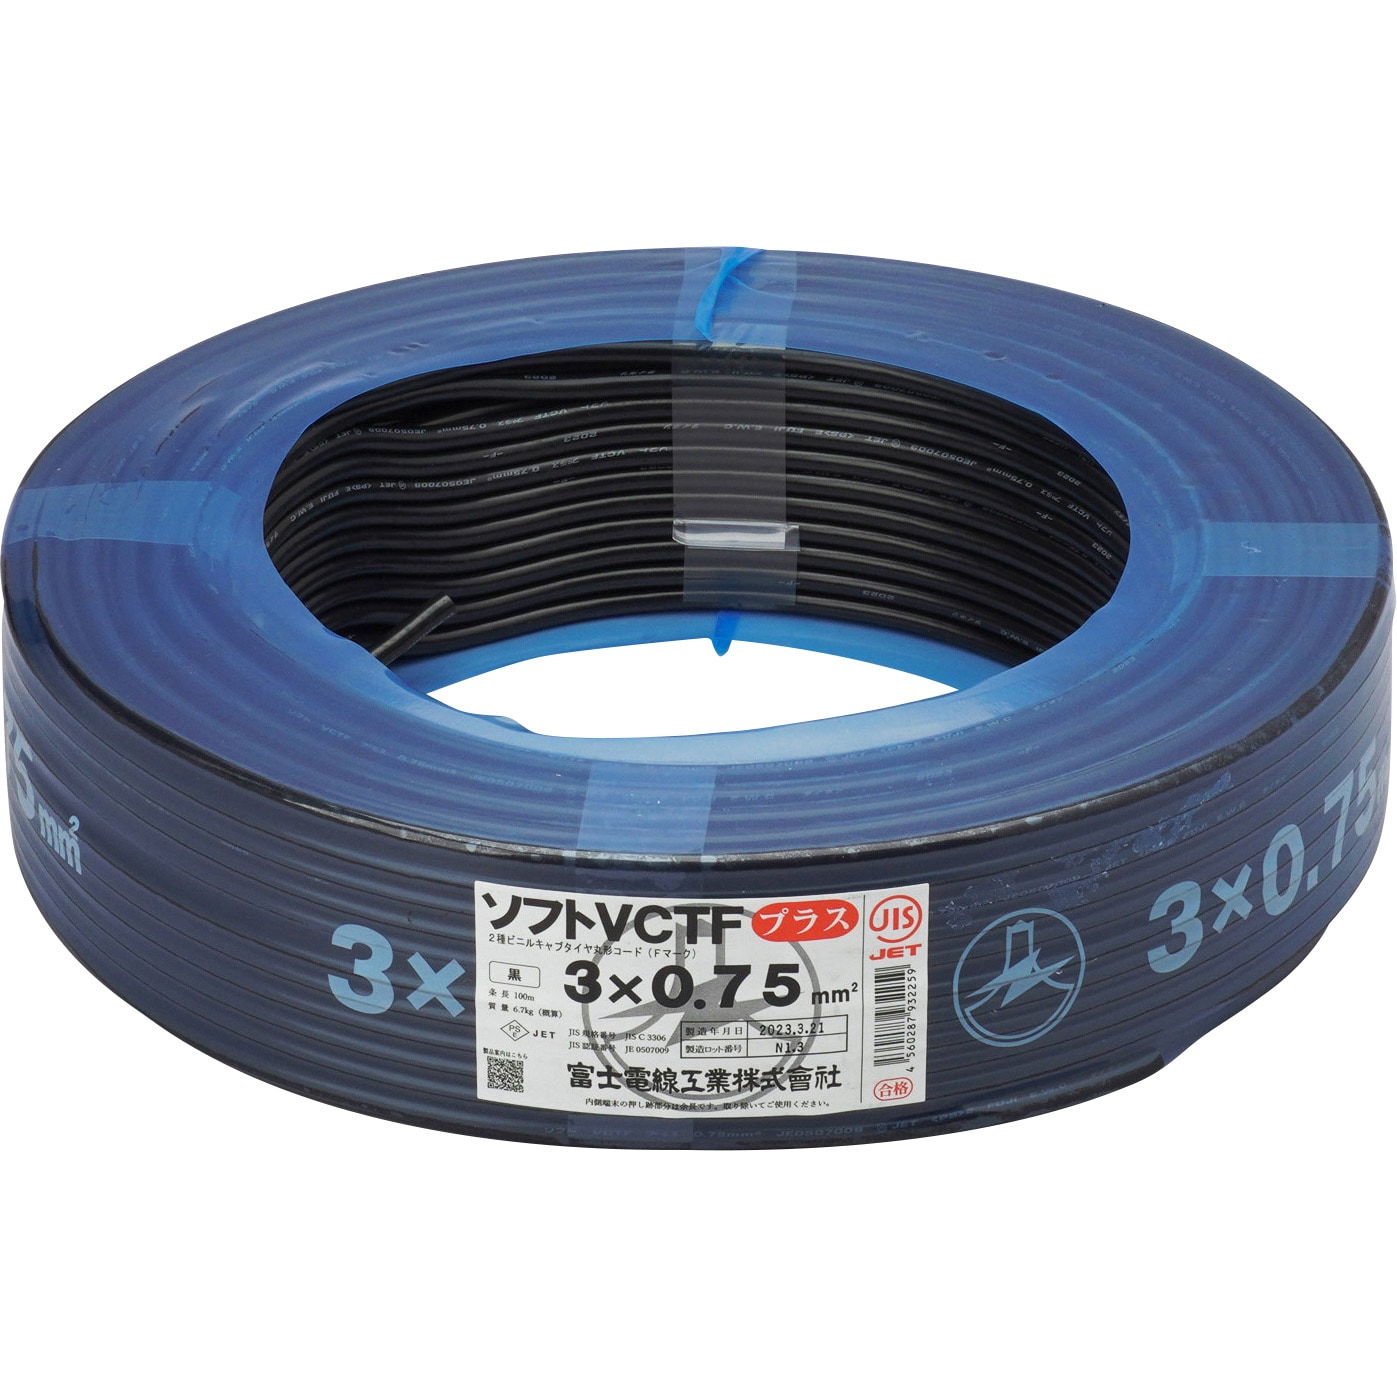 富士電線 ビニルキャブタイヤ長円形コード 0.75㎟ 100m巻 黒色 VCTFK0